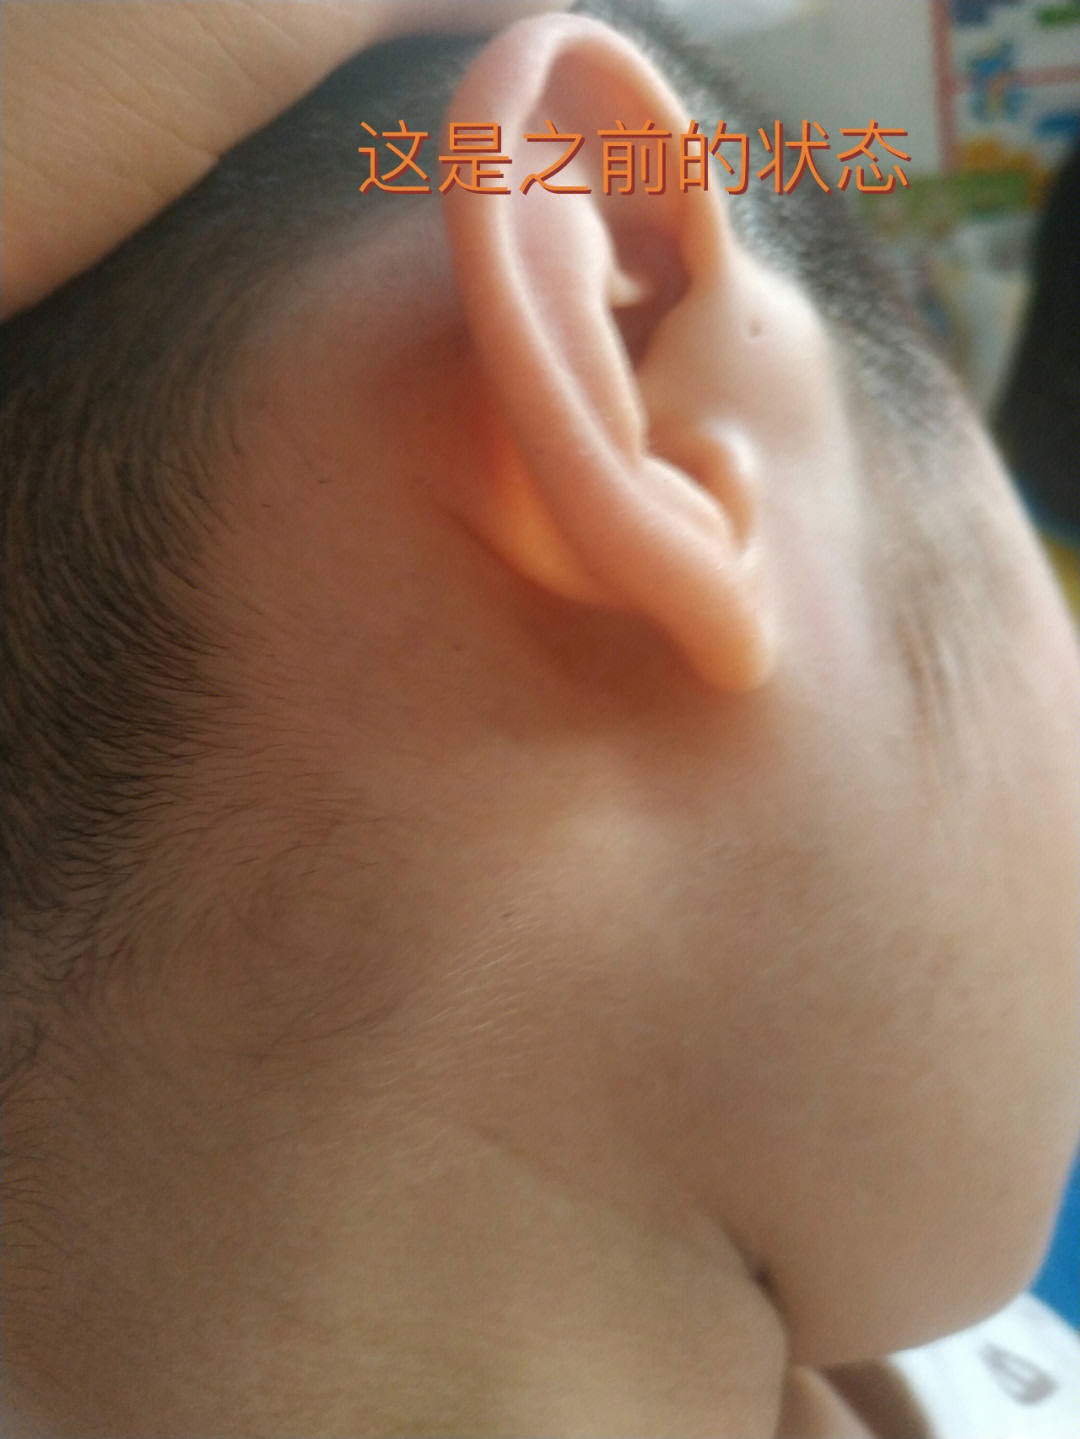 我家宝贝五岁多,之前一直右耳有这个耳前瘘管鼓包,大概维持了有一年多